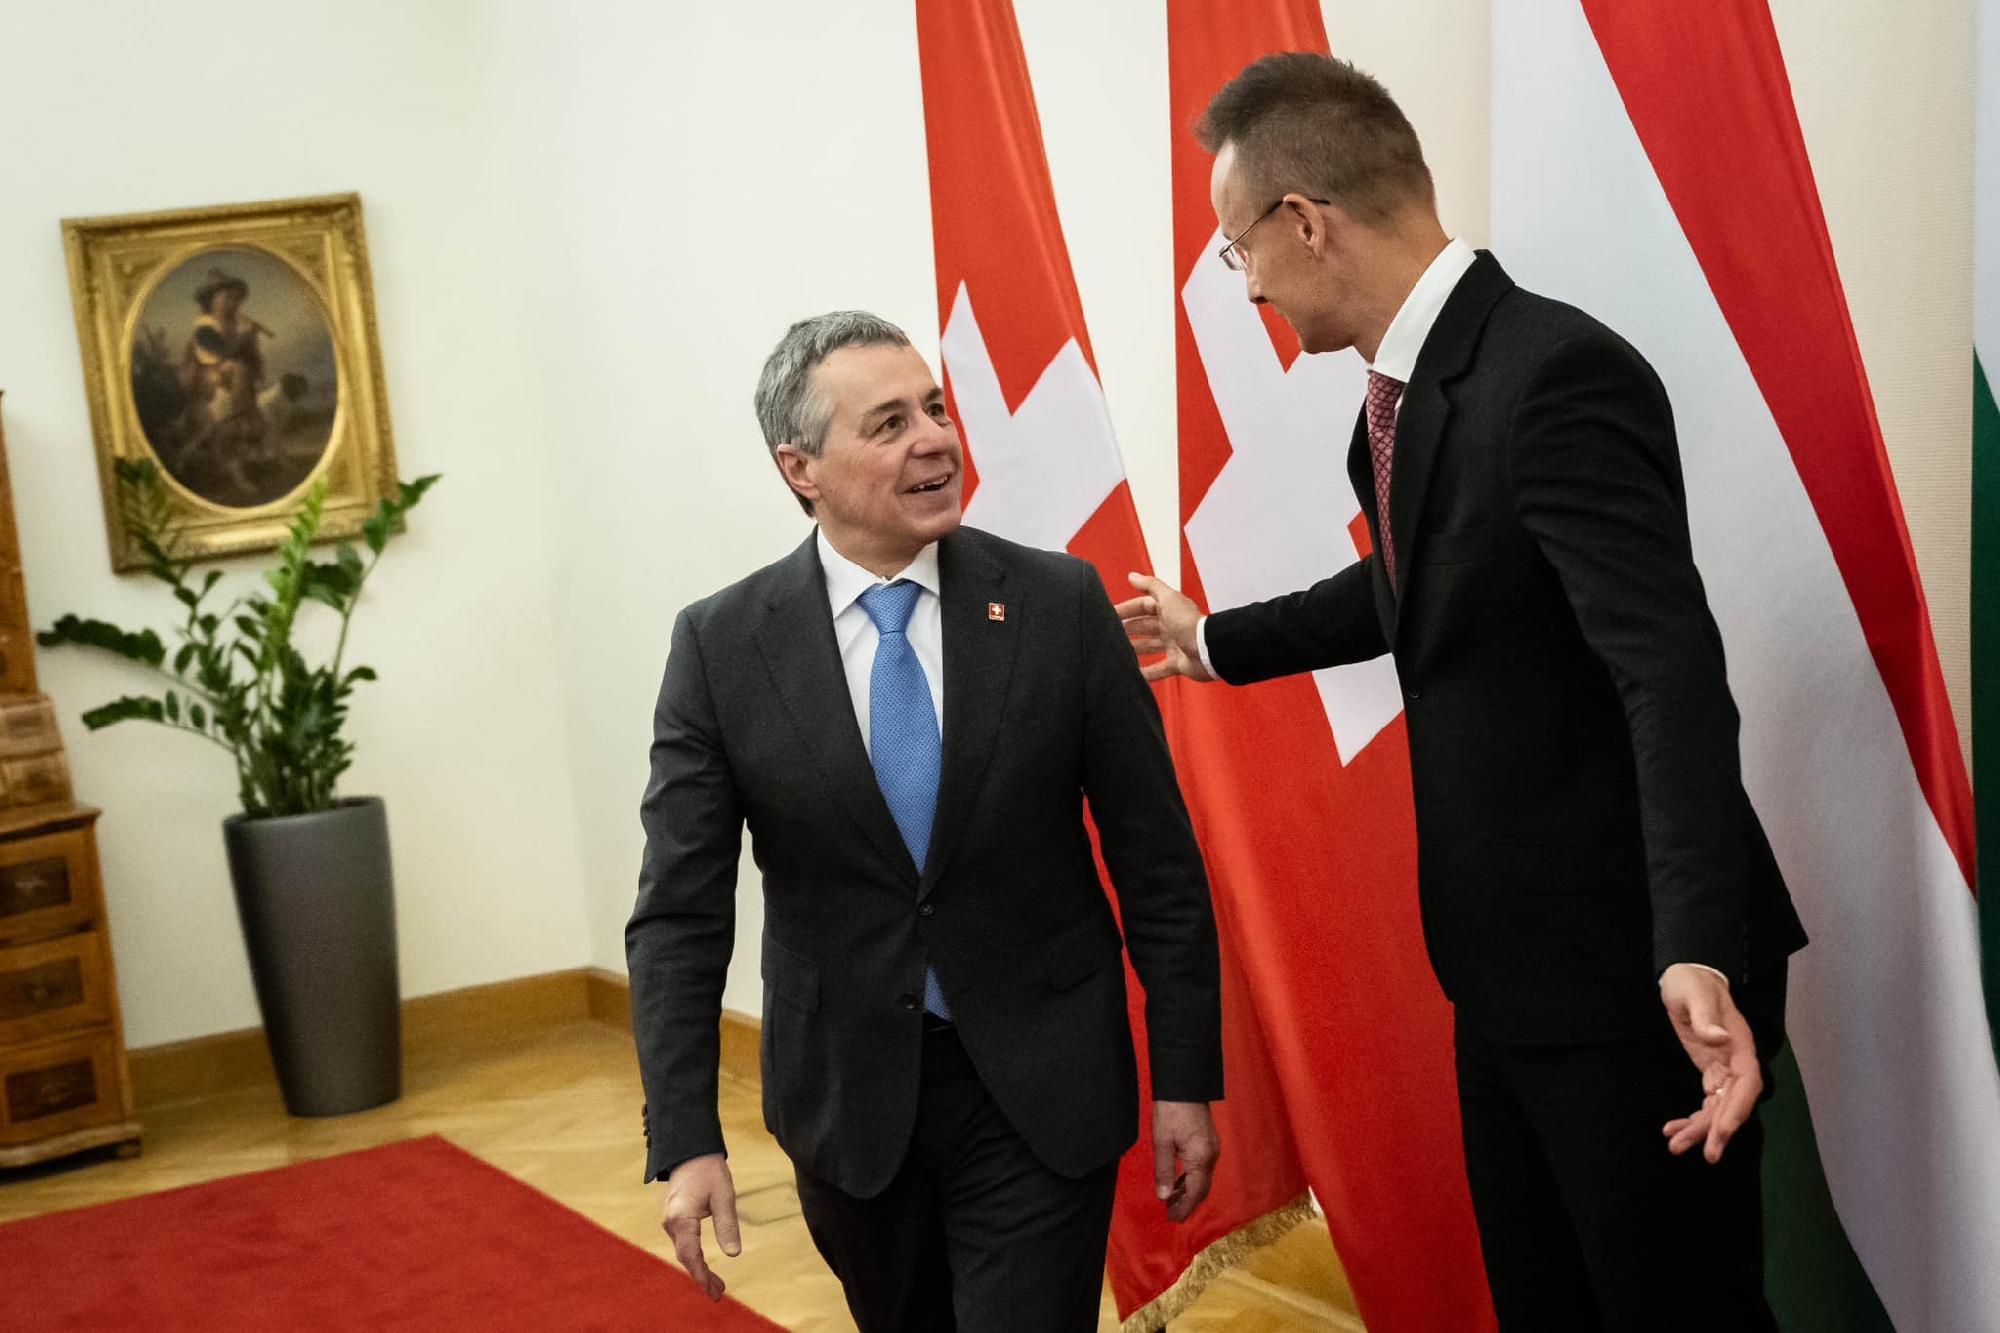 Szijjártó Péter: Magyarország és Svájc is kiáll a szuverenitás és a béke mellett